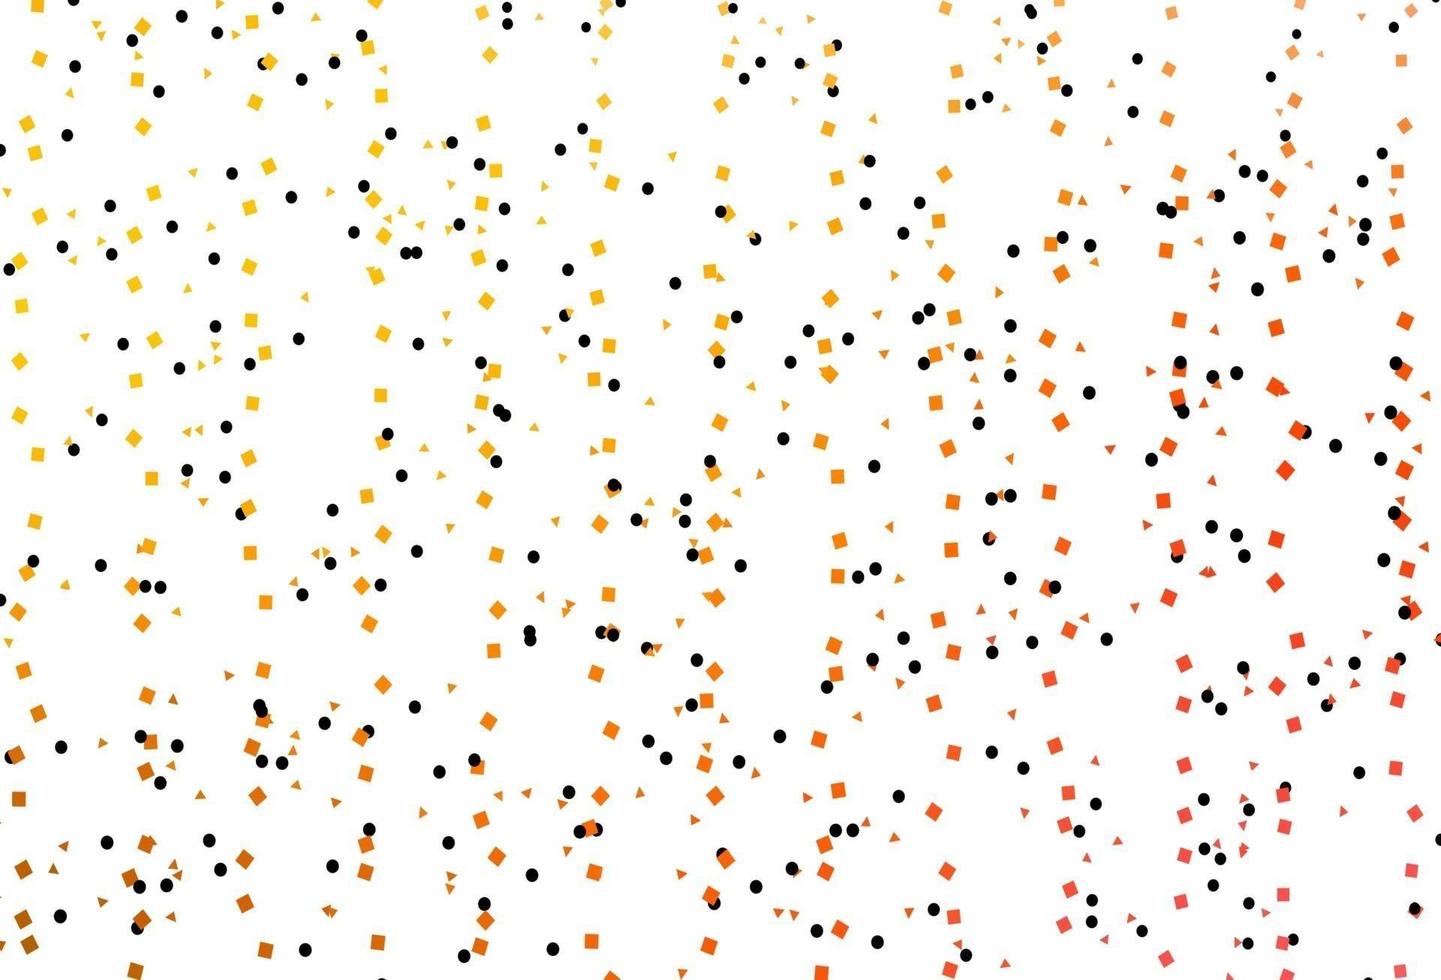 layout de vetor amarelo, laranja claro com círculos, linhas, retângulos.